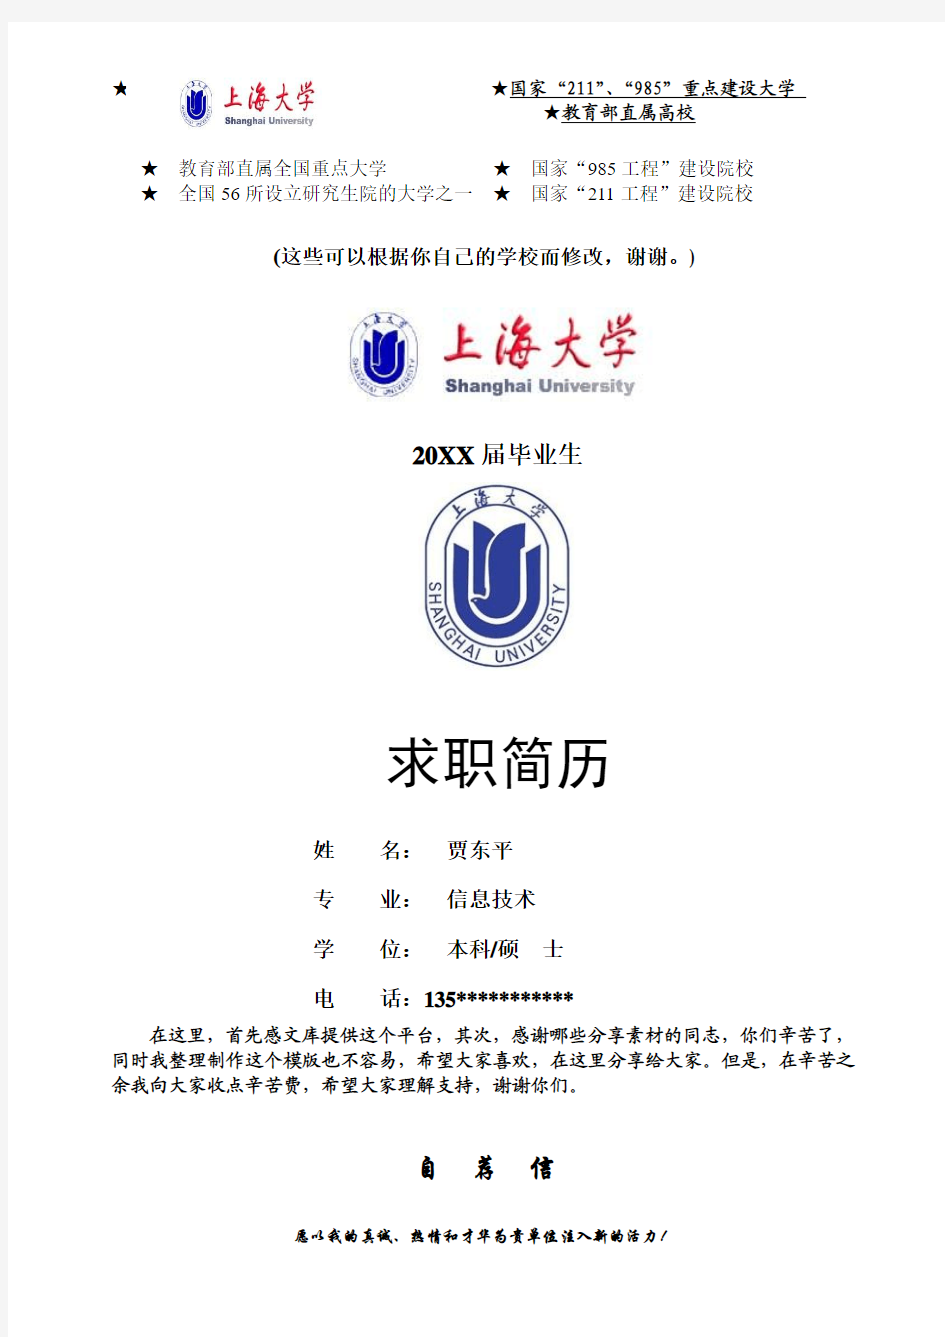 上海大学应届毕业生求职简历-分享给大家-一份好的简历改变你的一生